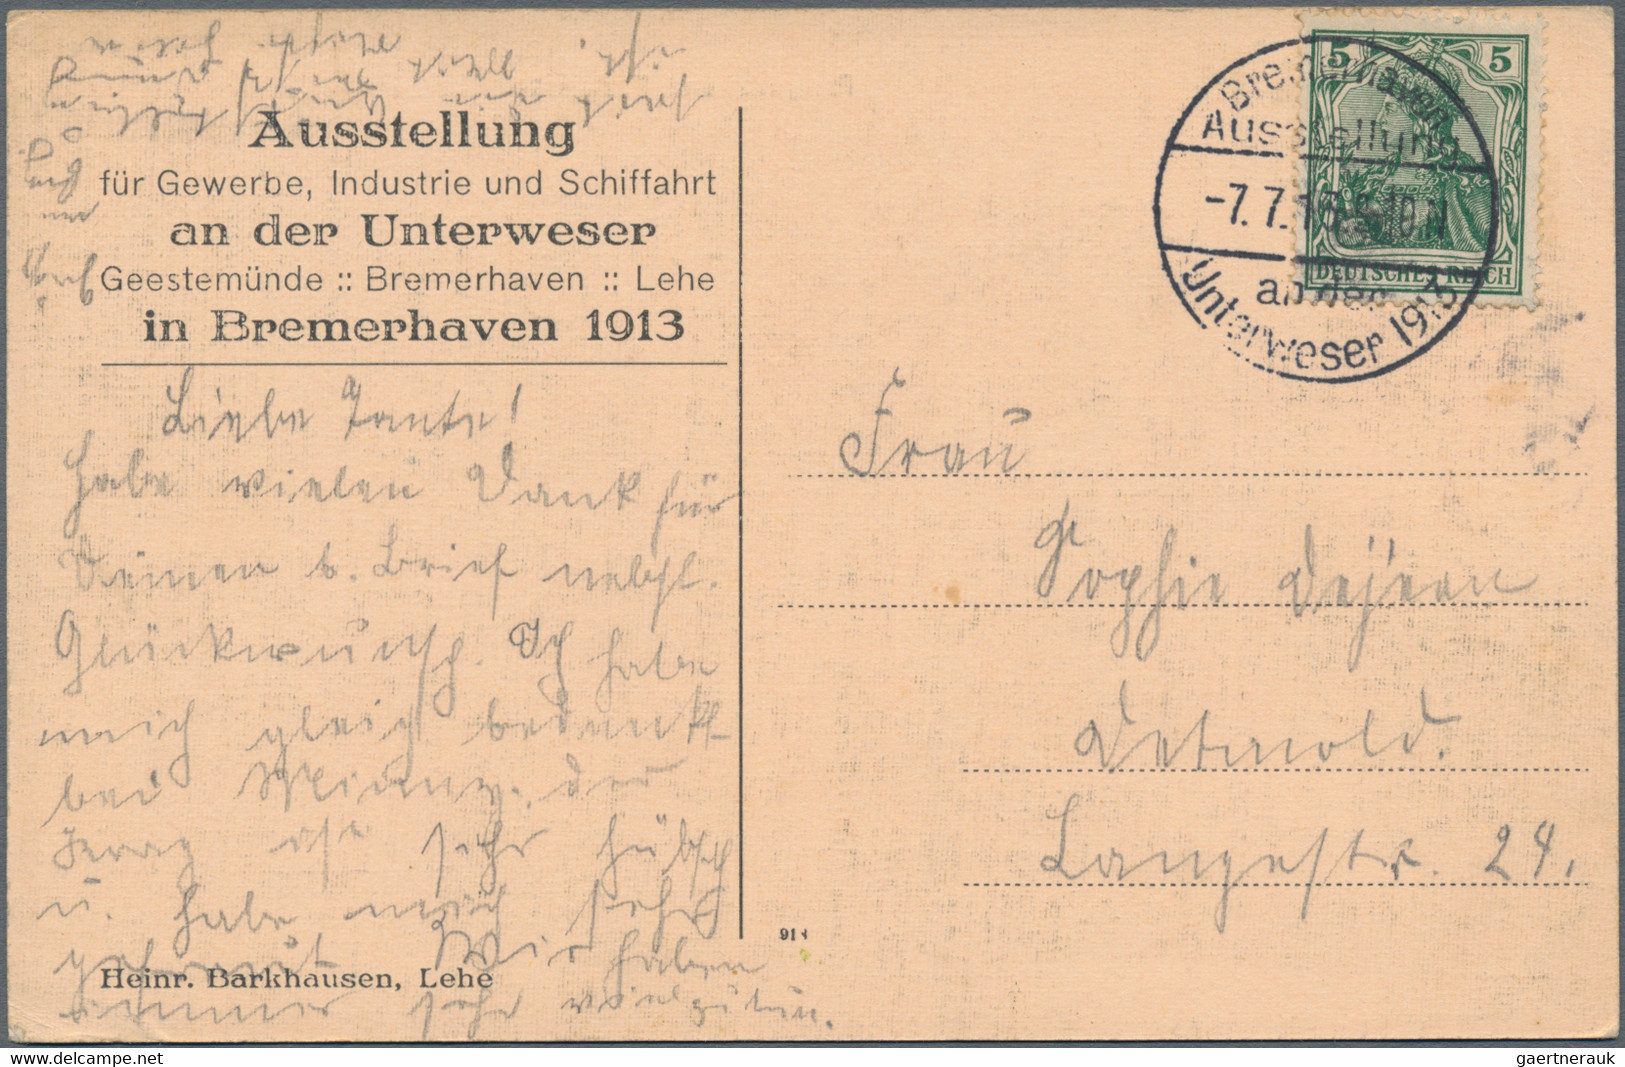 Deutsches Reich - Stempel: 1894/1922, SONDERSTEMPEL, interessanter Posten mit So